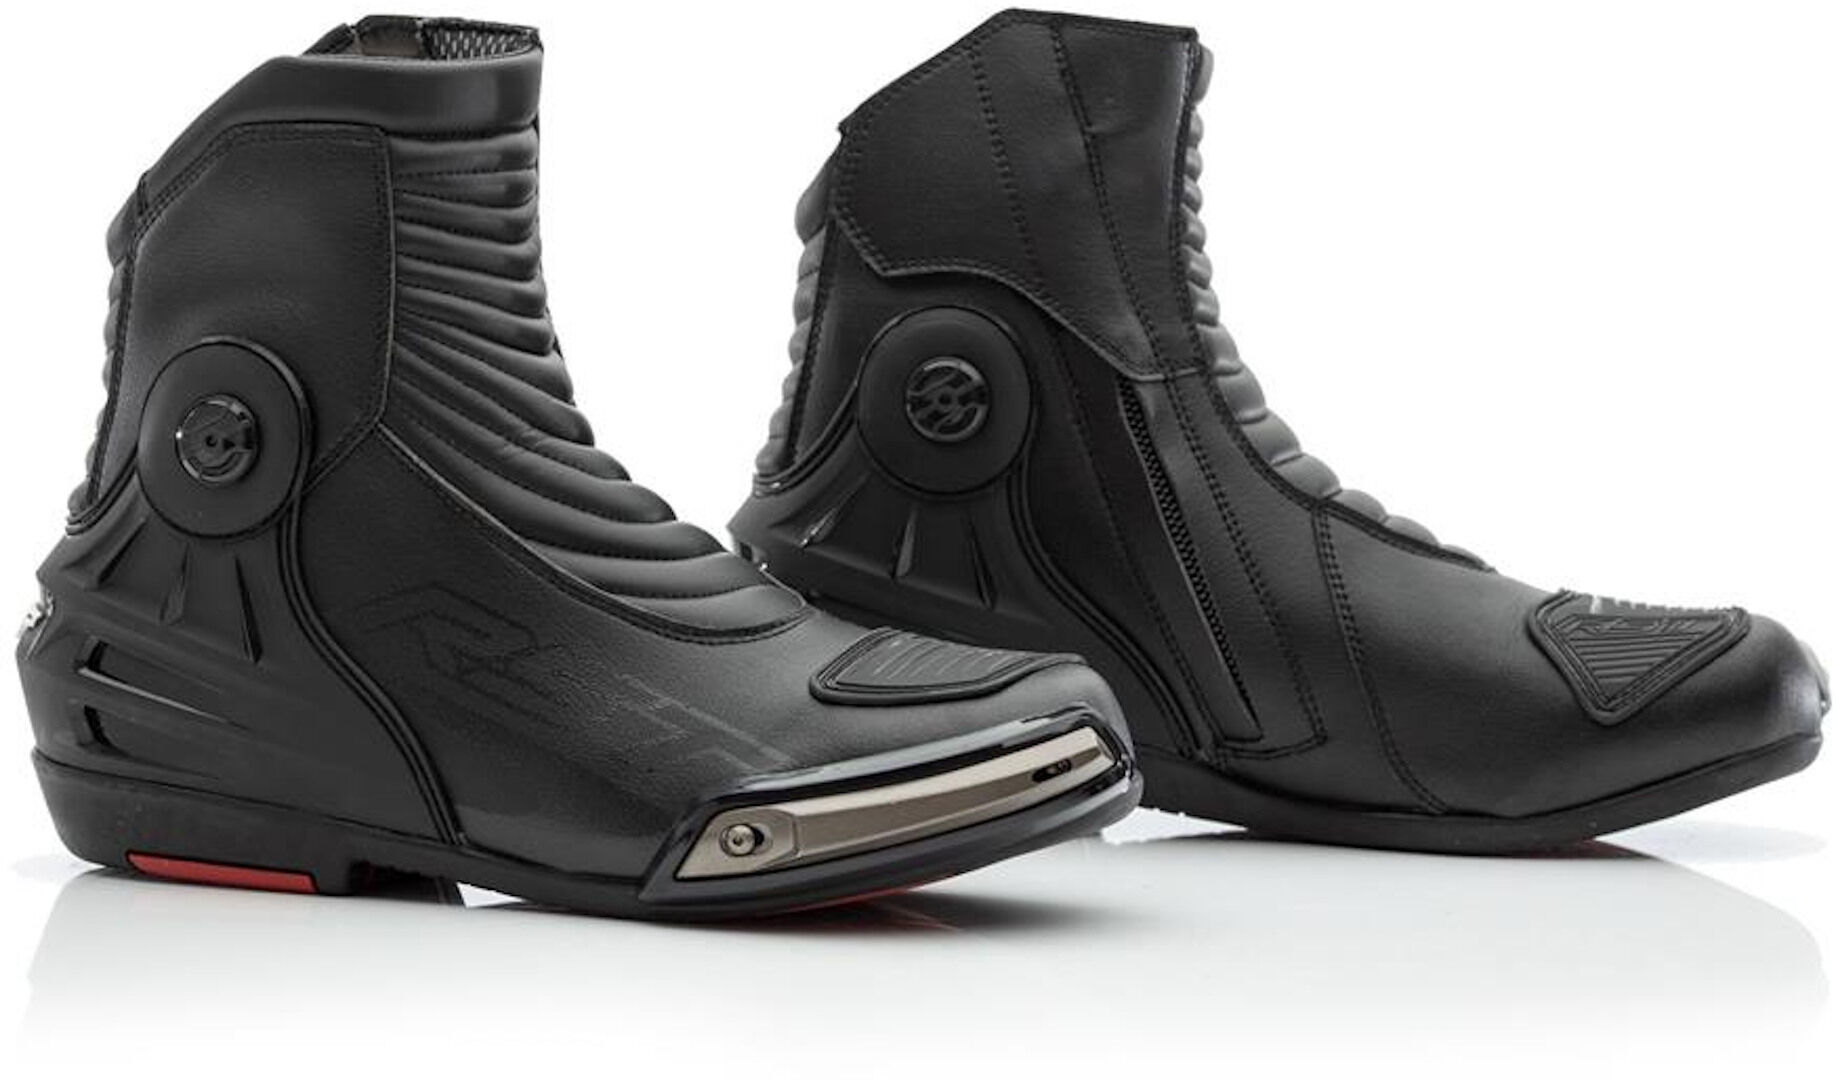 RST Tractech Evo 3 WP Zapatos de motocicleta - Negro (44)